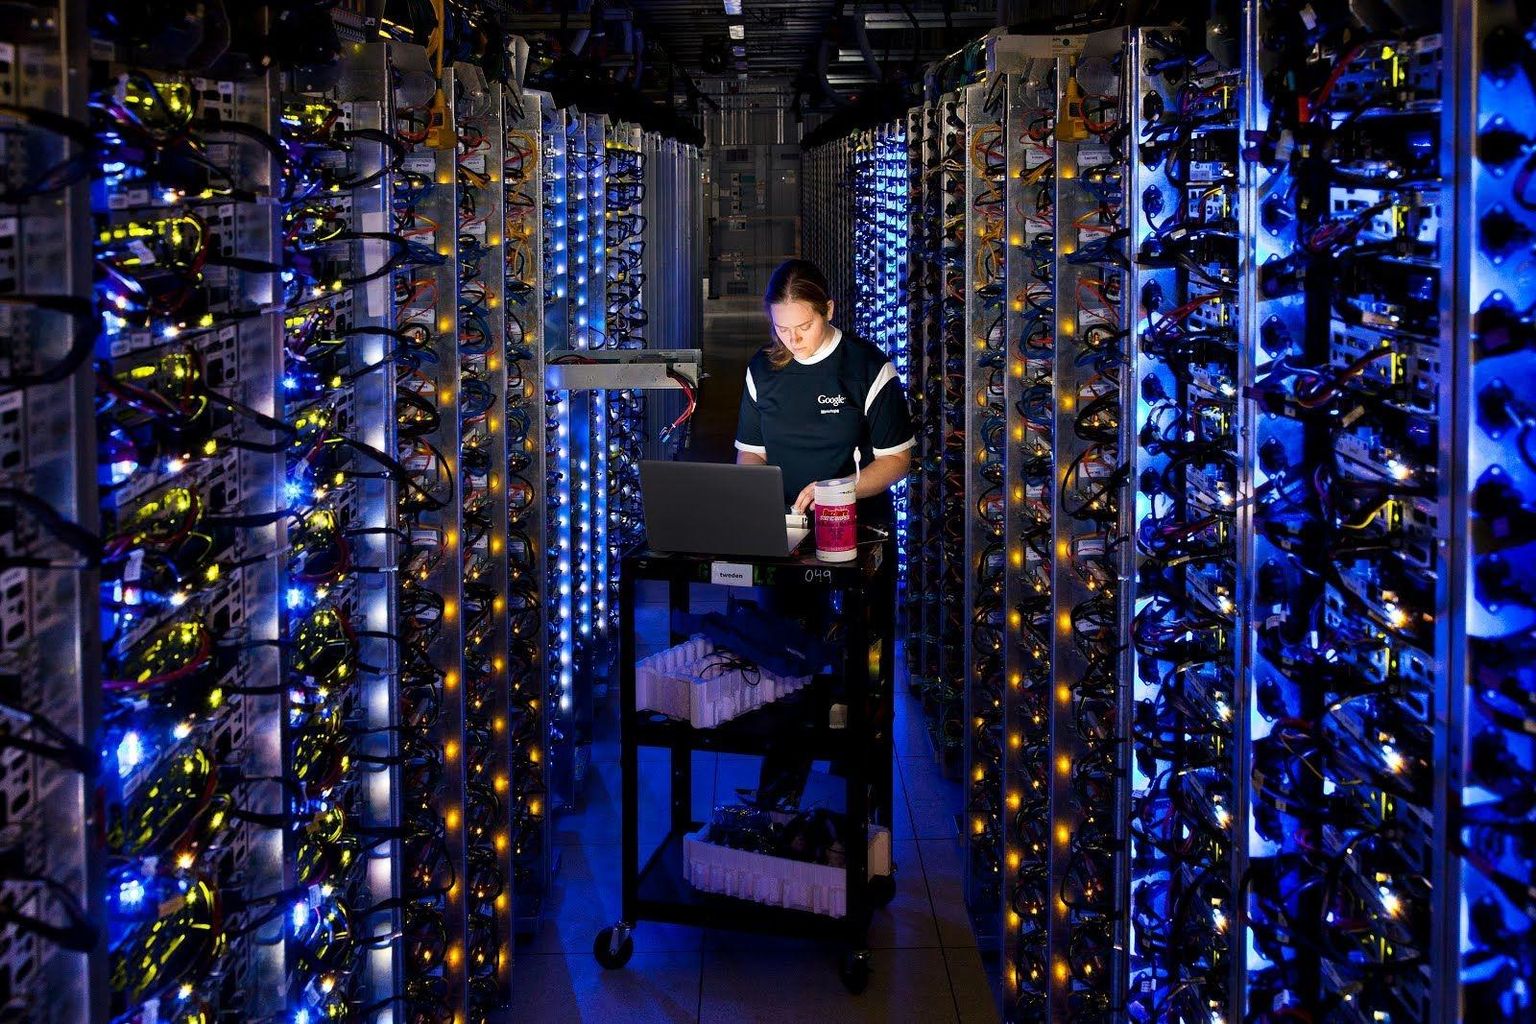 Google’i andmekeskus Dalleses Oregoni osariigis. Tehniku ümber olevates serverites on kümnete ja sadade miljonite inimeste digitaalsed trajektoorid, millest inimesed ei pruugi ise midagi teada.